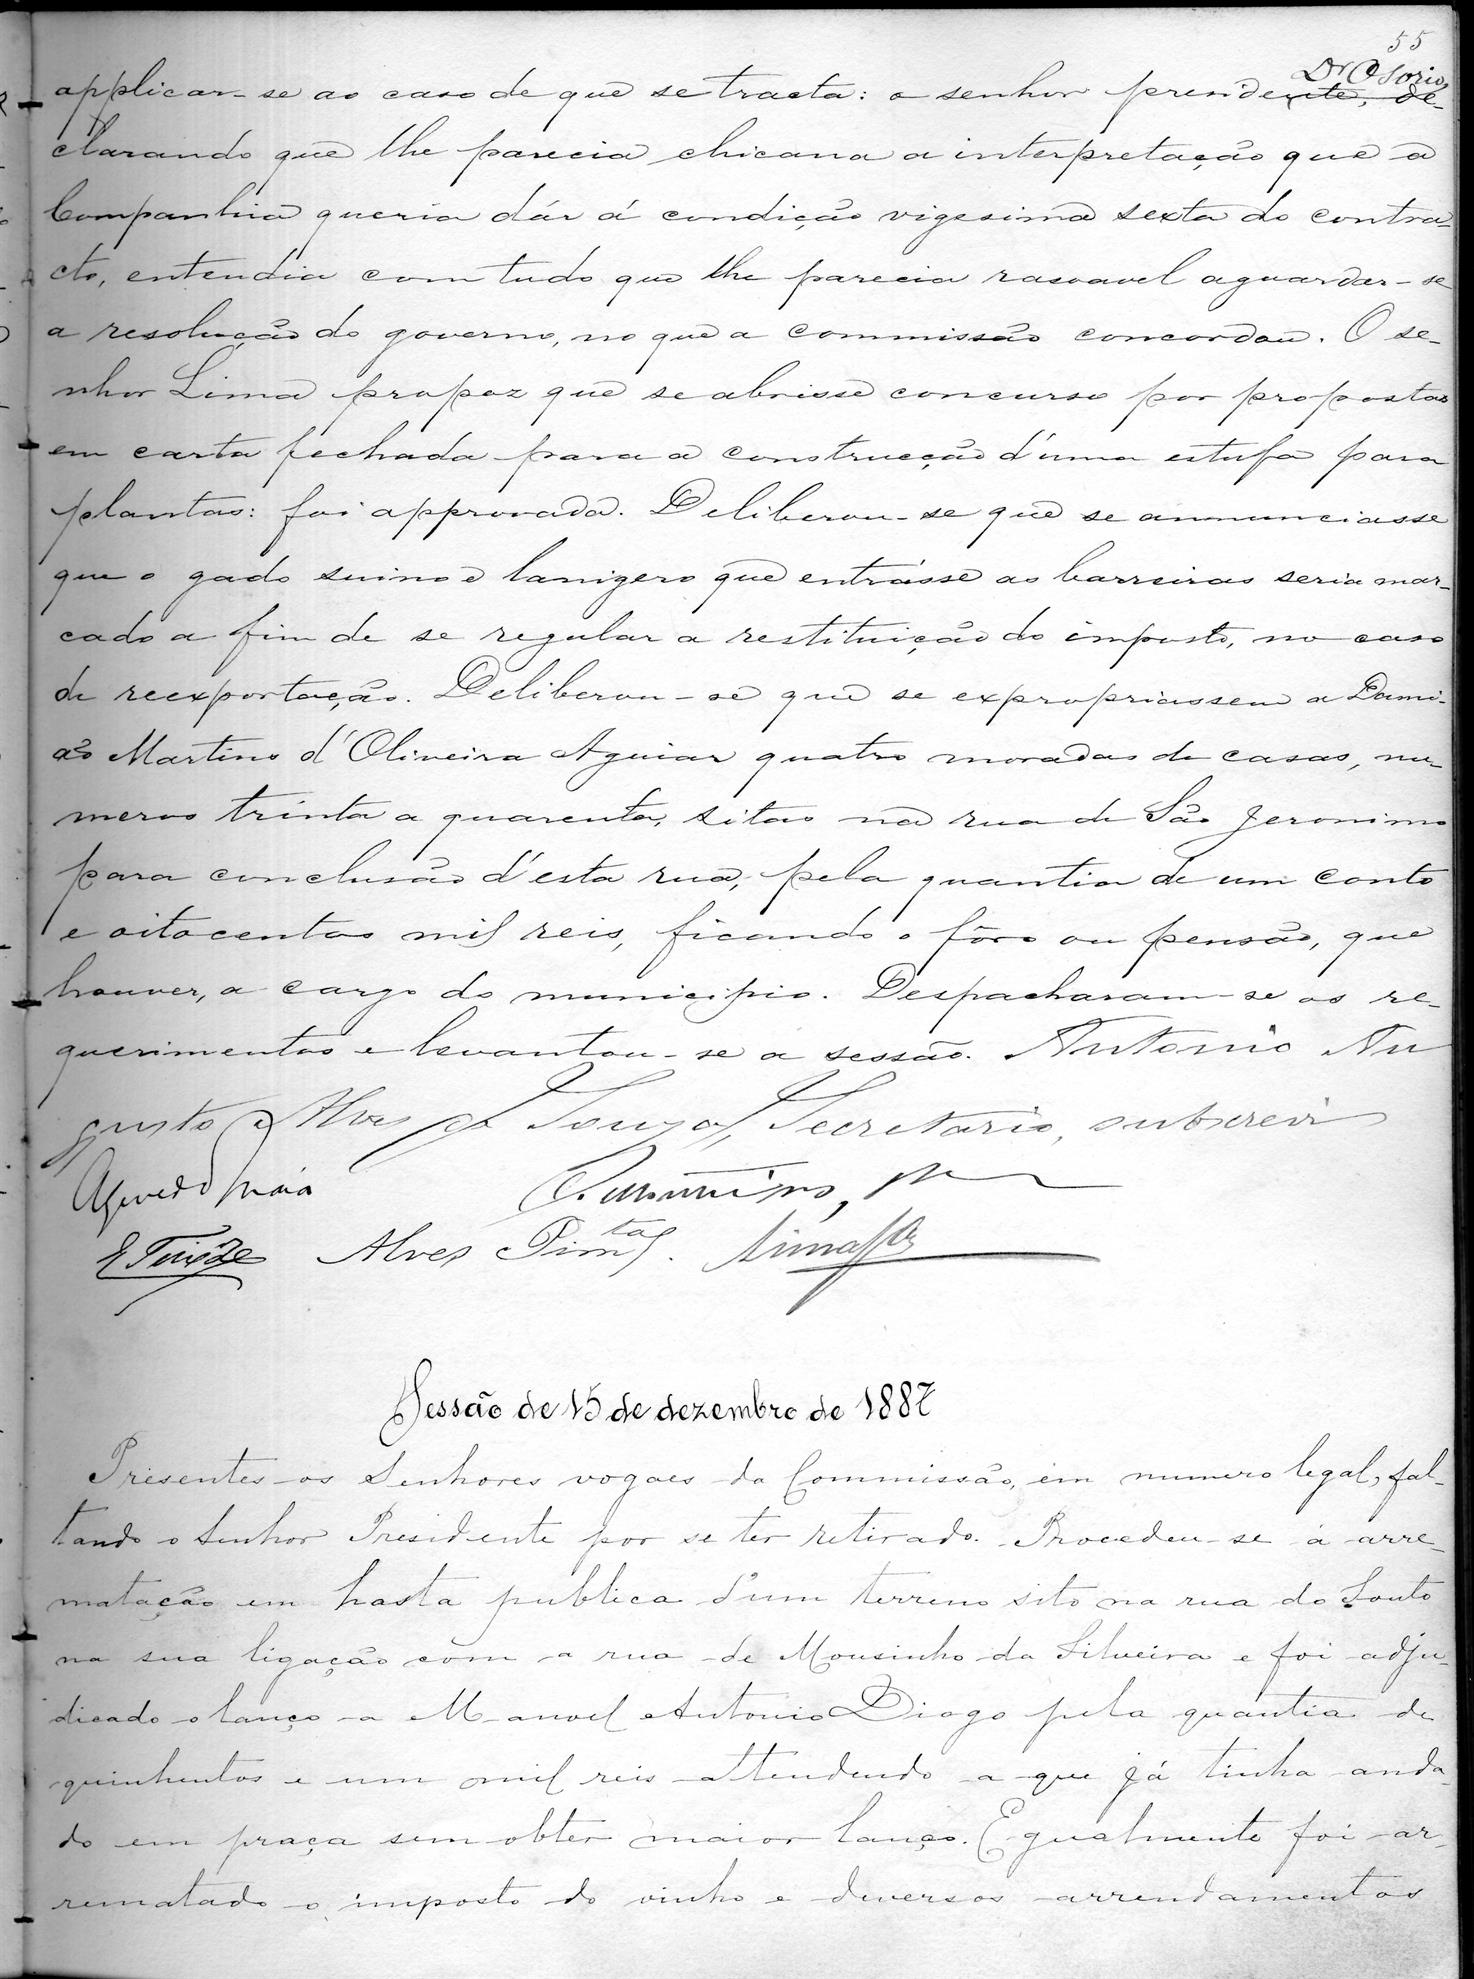 Acta da Comissão Executiva: 1887-12-15